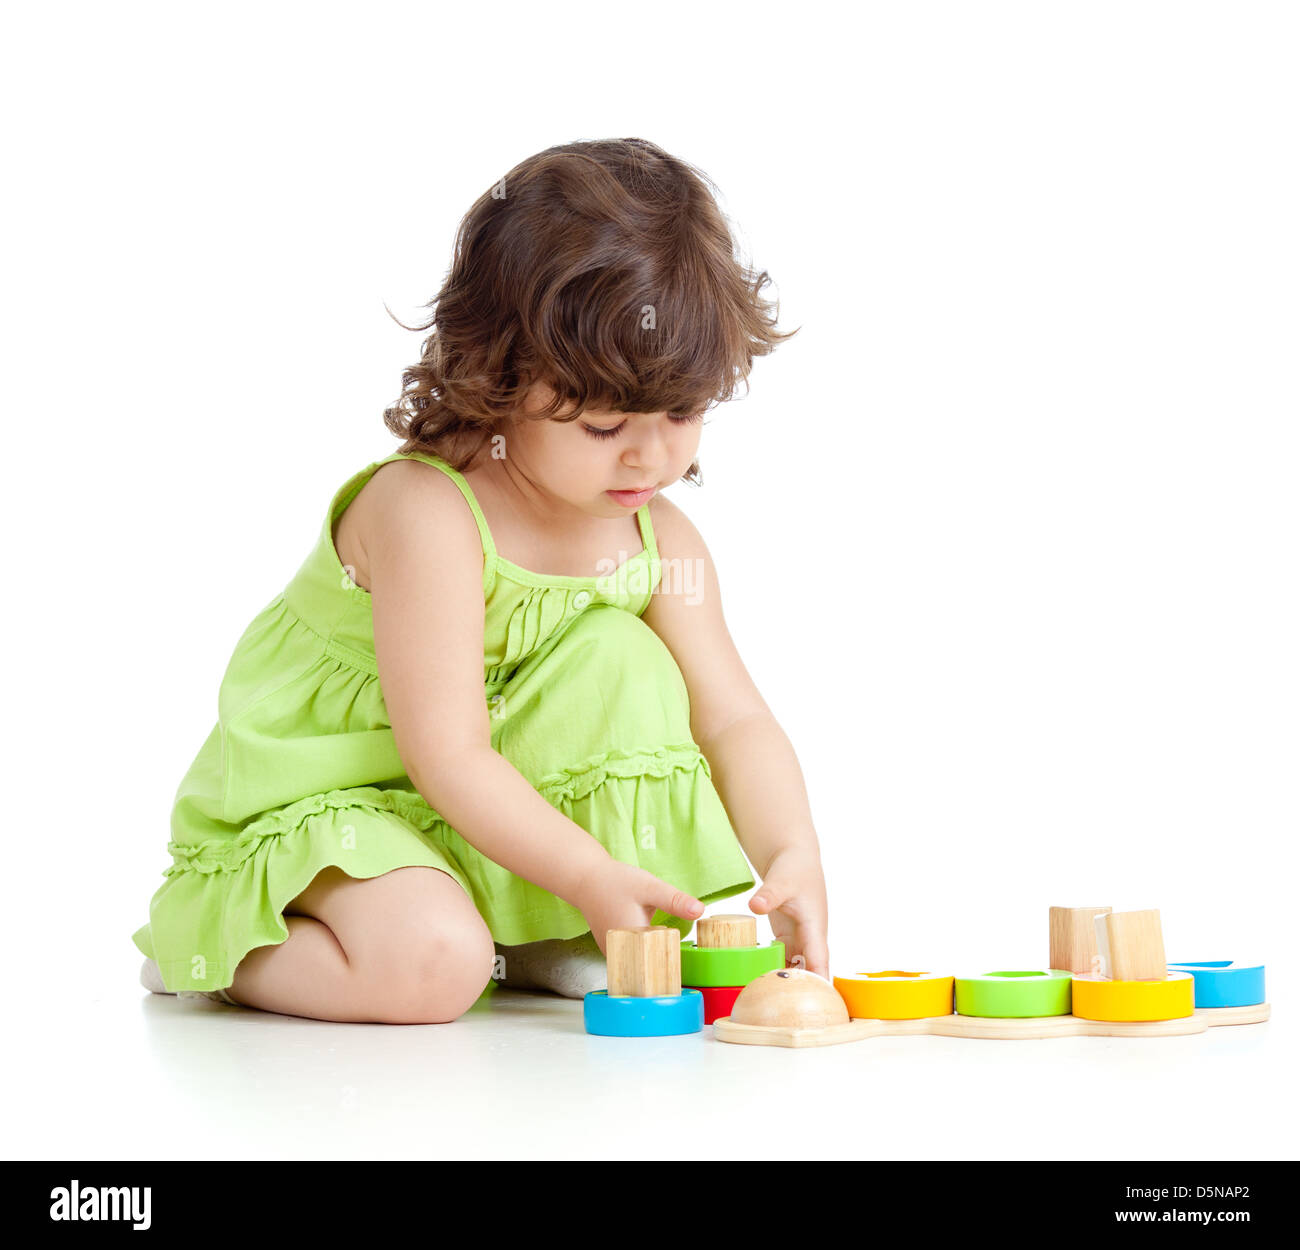 kleines Kind Mädchen spielen mit bunten Spielzeug, isoliert auf weiß Stockfoto